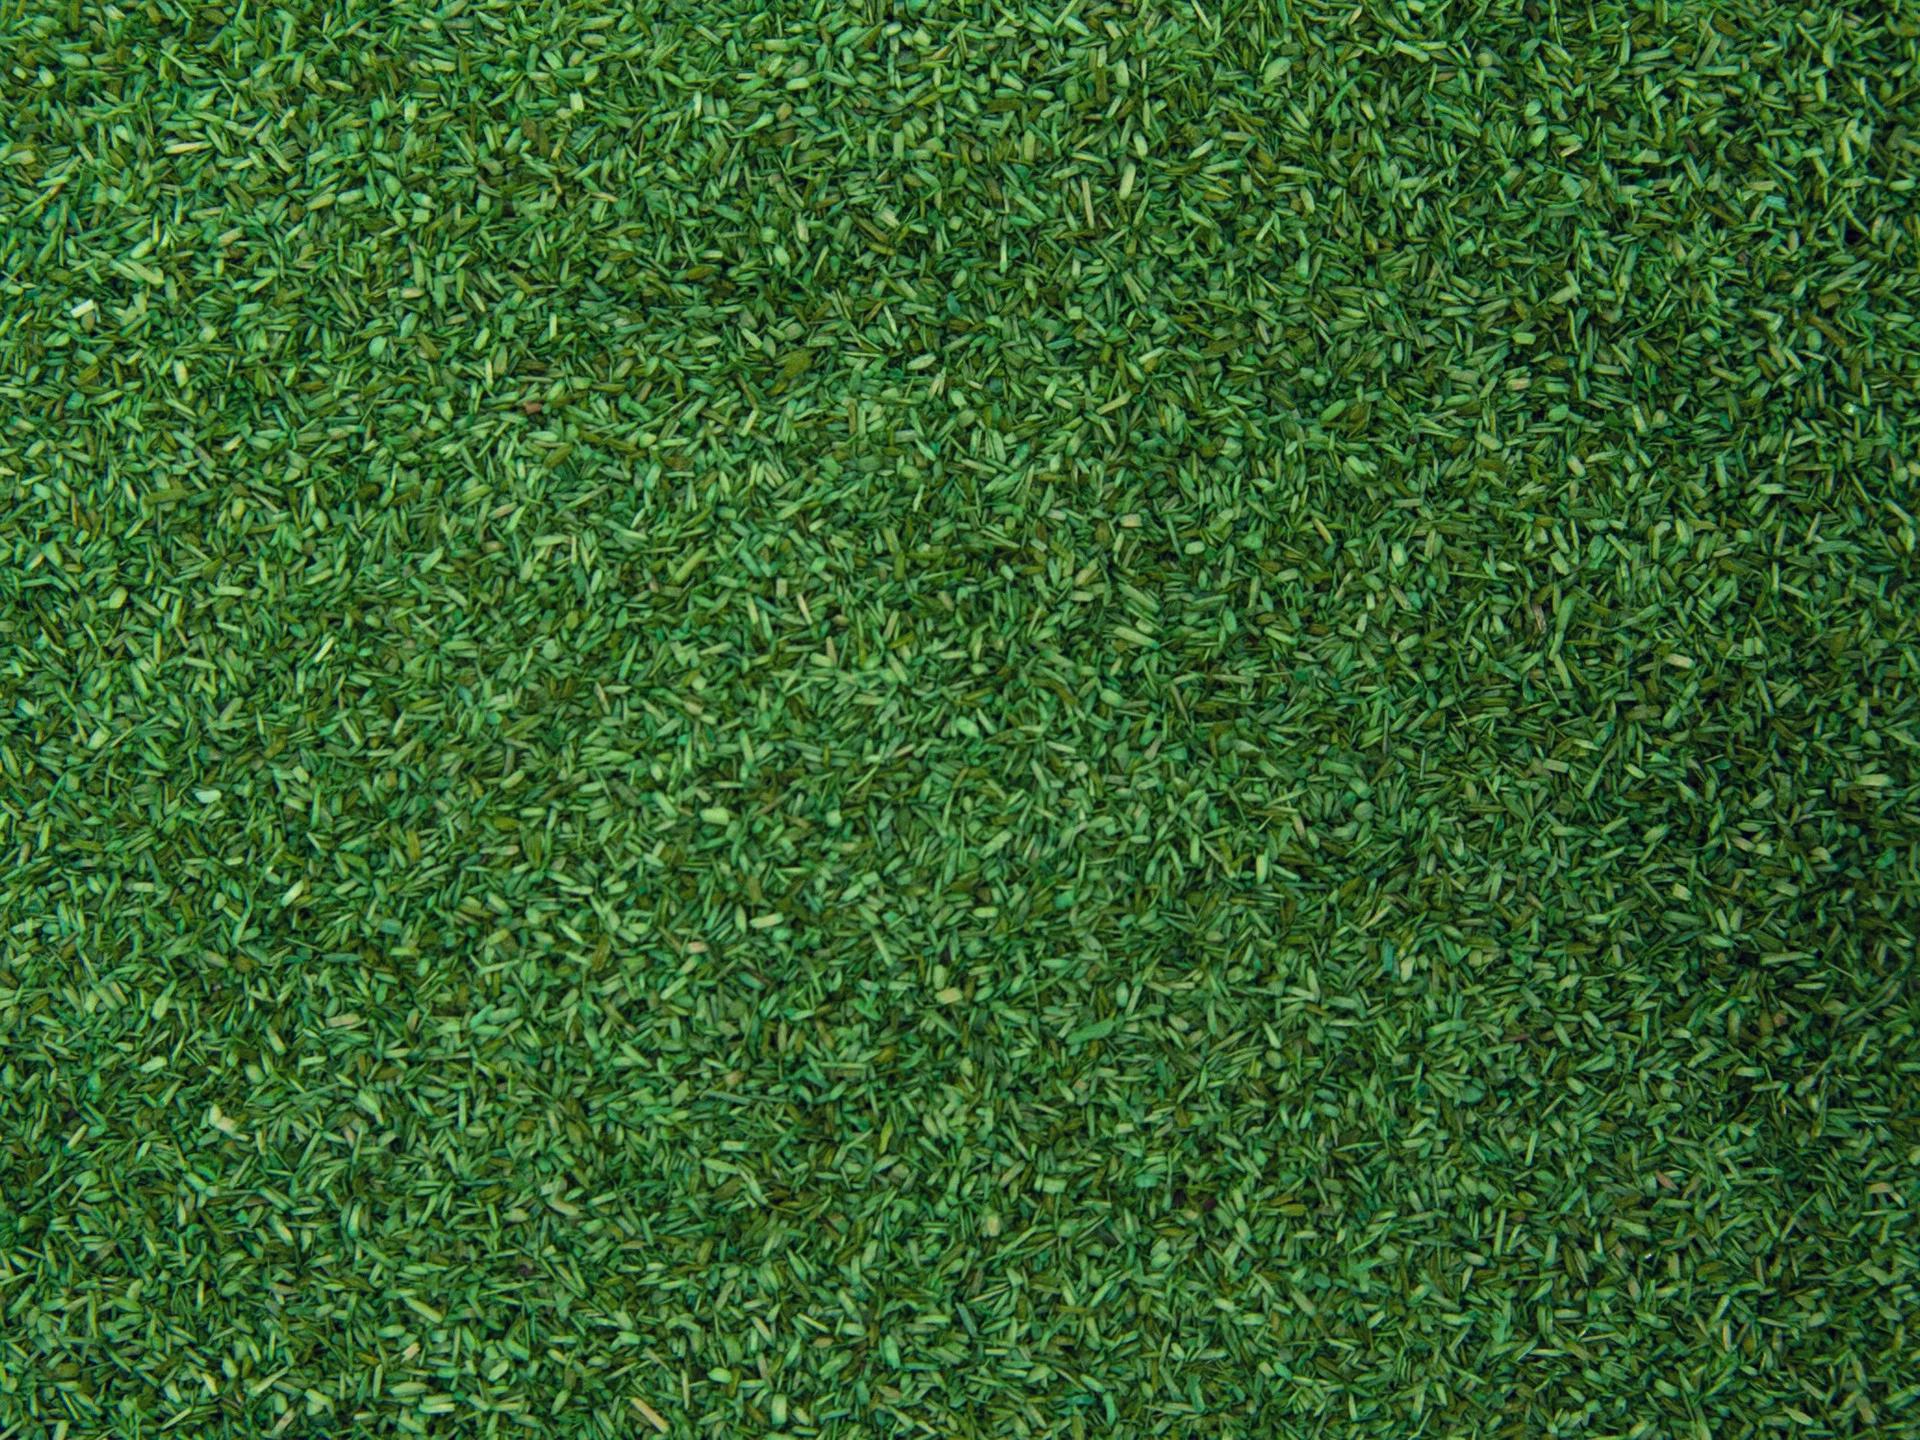 NOCH 08420 Strömaterial Medel Grönt/Scatter material Middle Green 42 gram